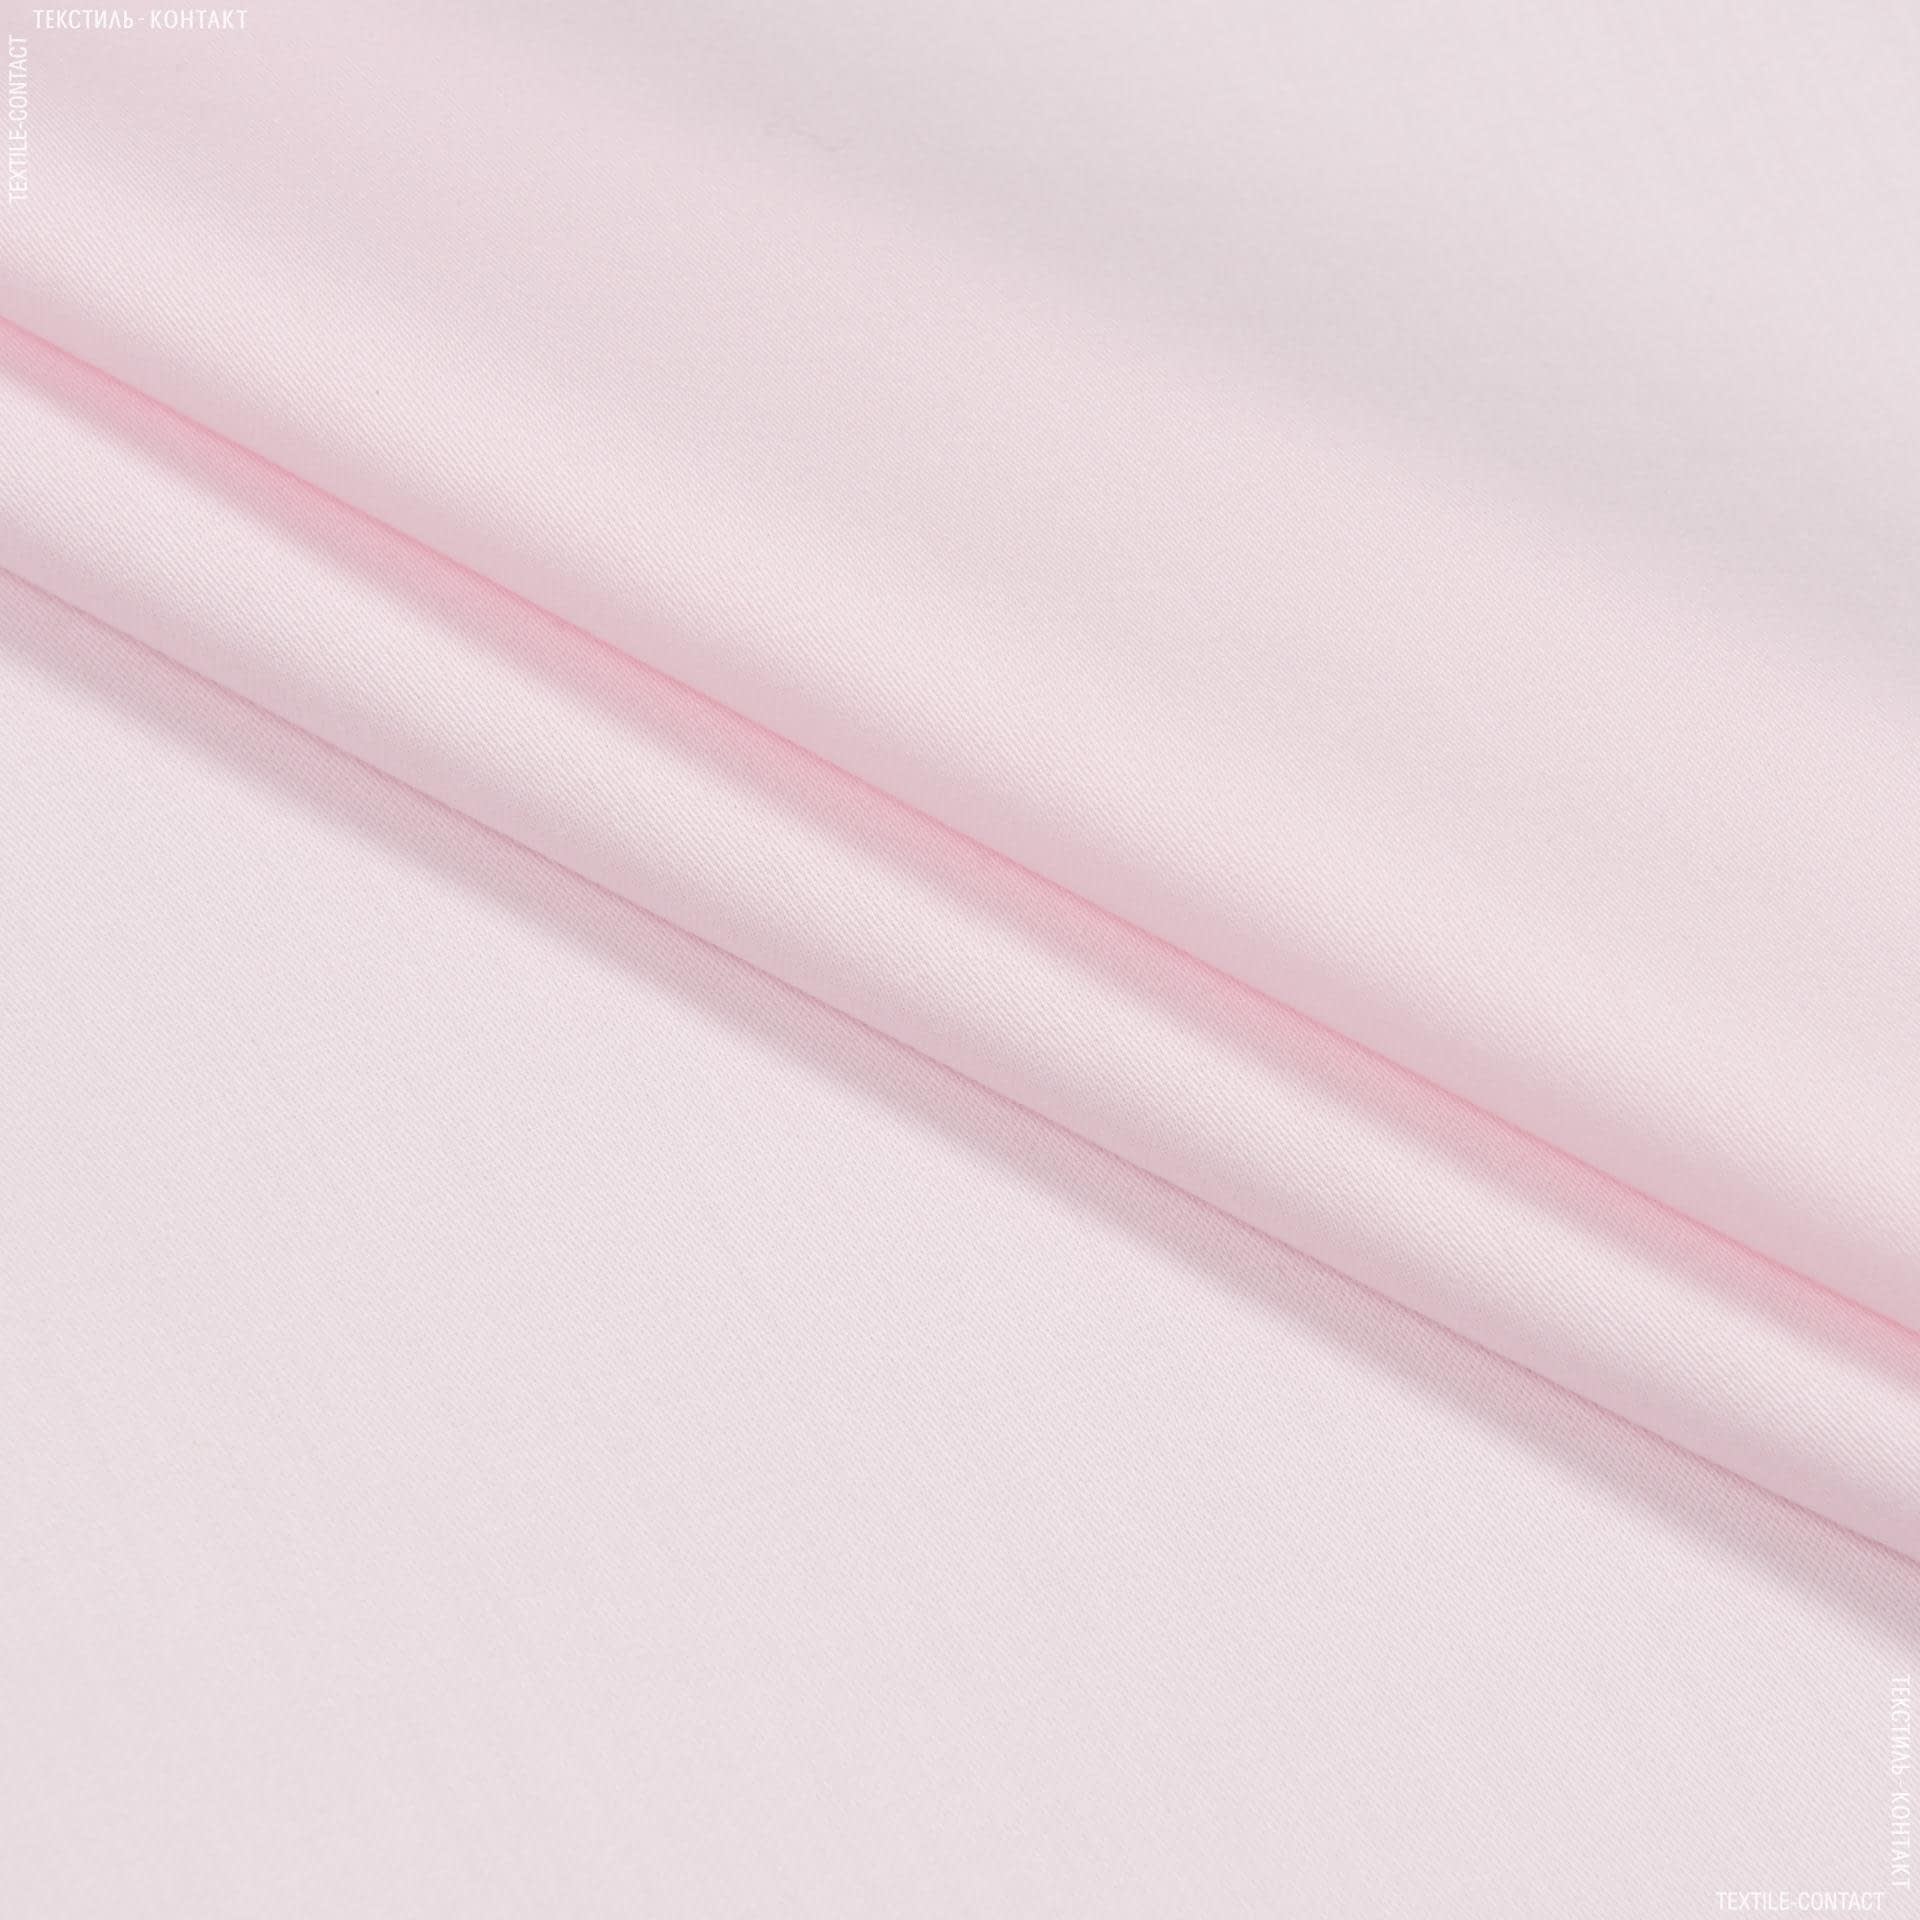 Тканини для дитячої постільної білизни - Евро сатин лісо / eurosaten liso рожевий